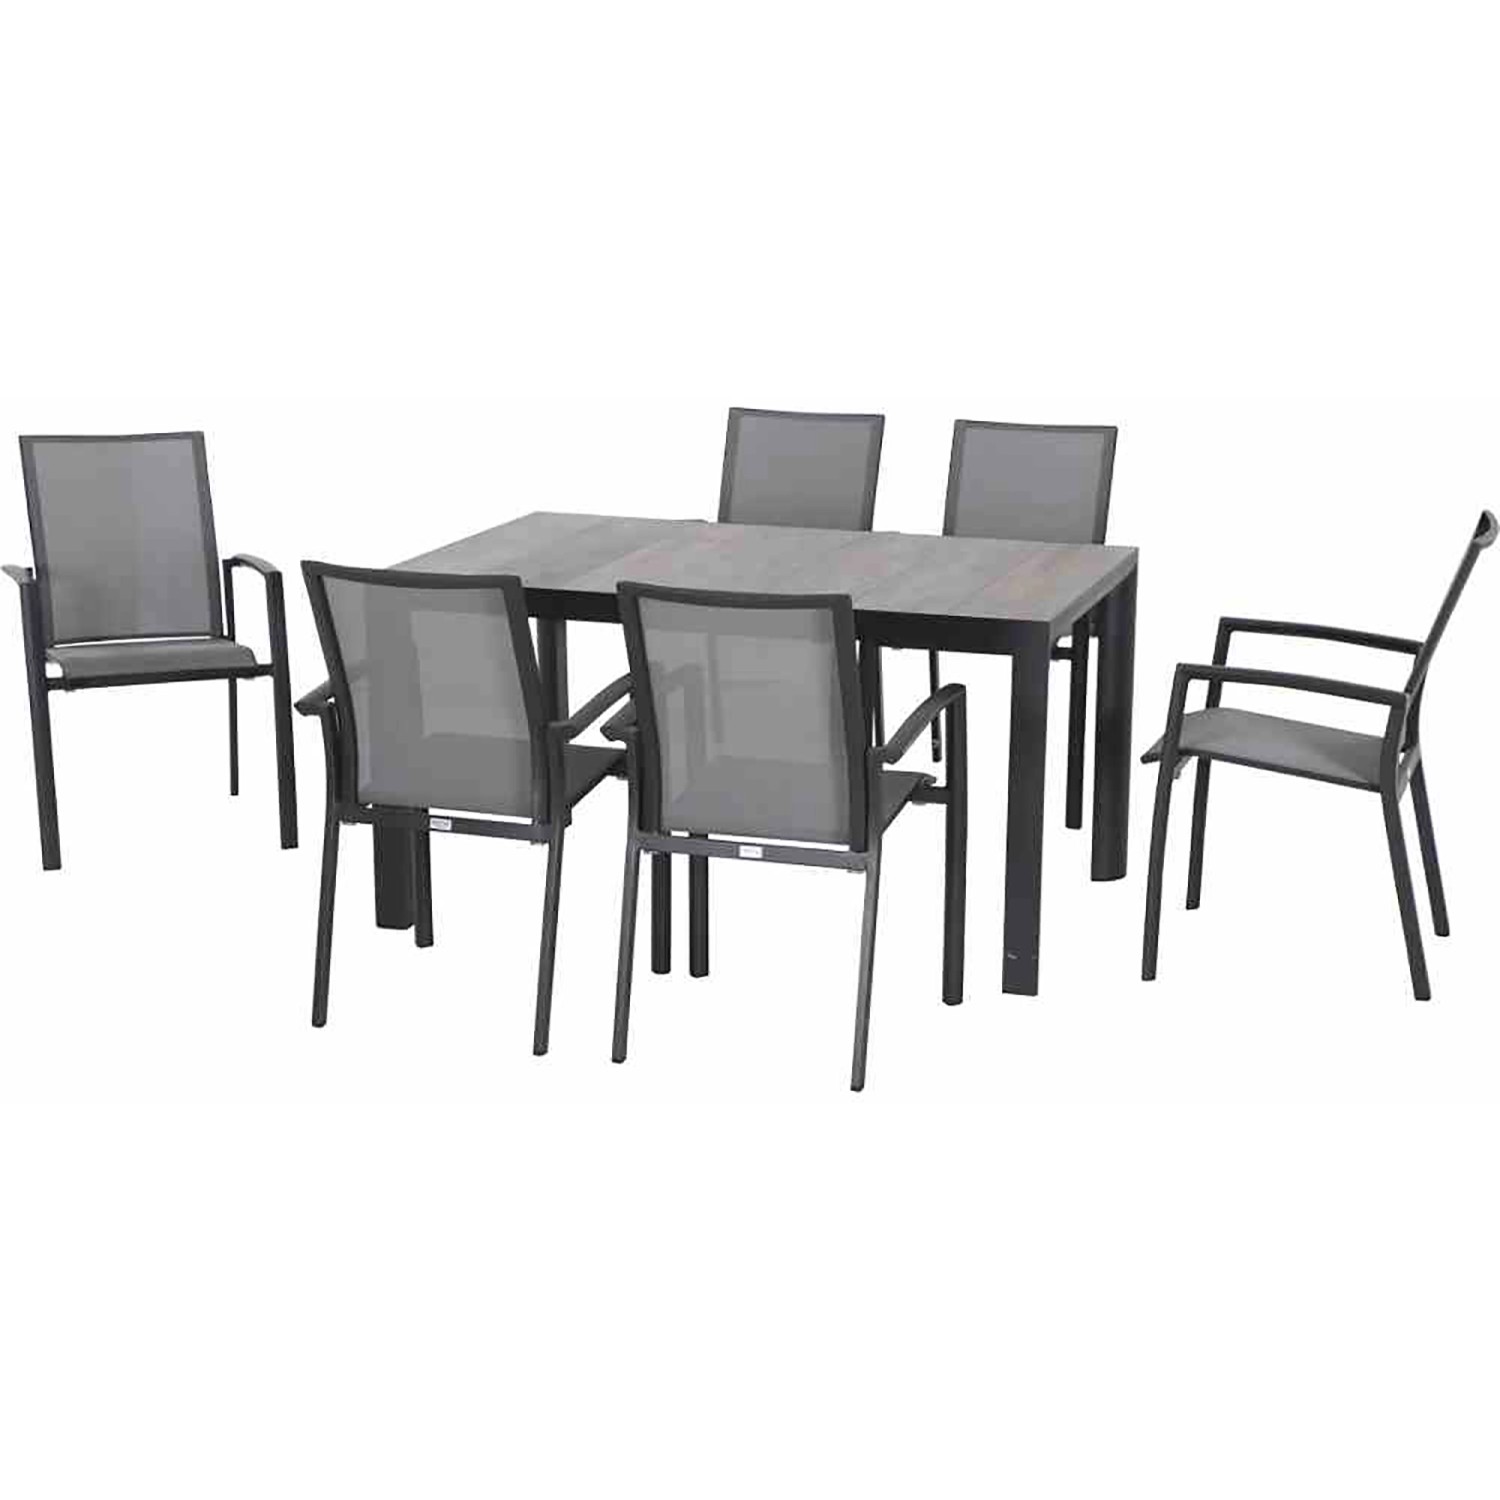 Siena Garden Gartenmöbelset Velia 7-teilig 6 x Dining Sessel 1 x Tisch günstig online kaufen